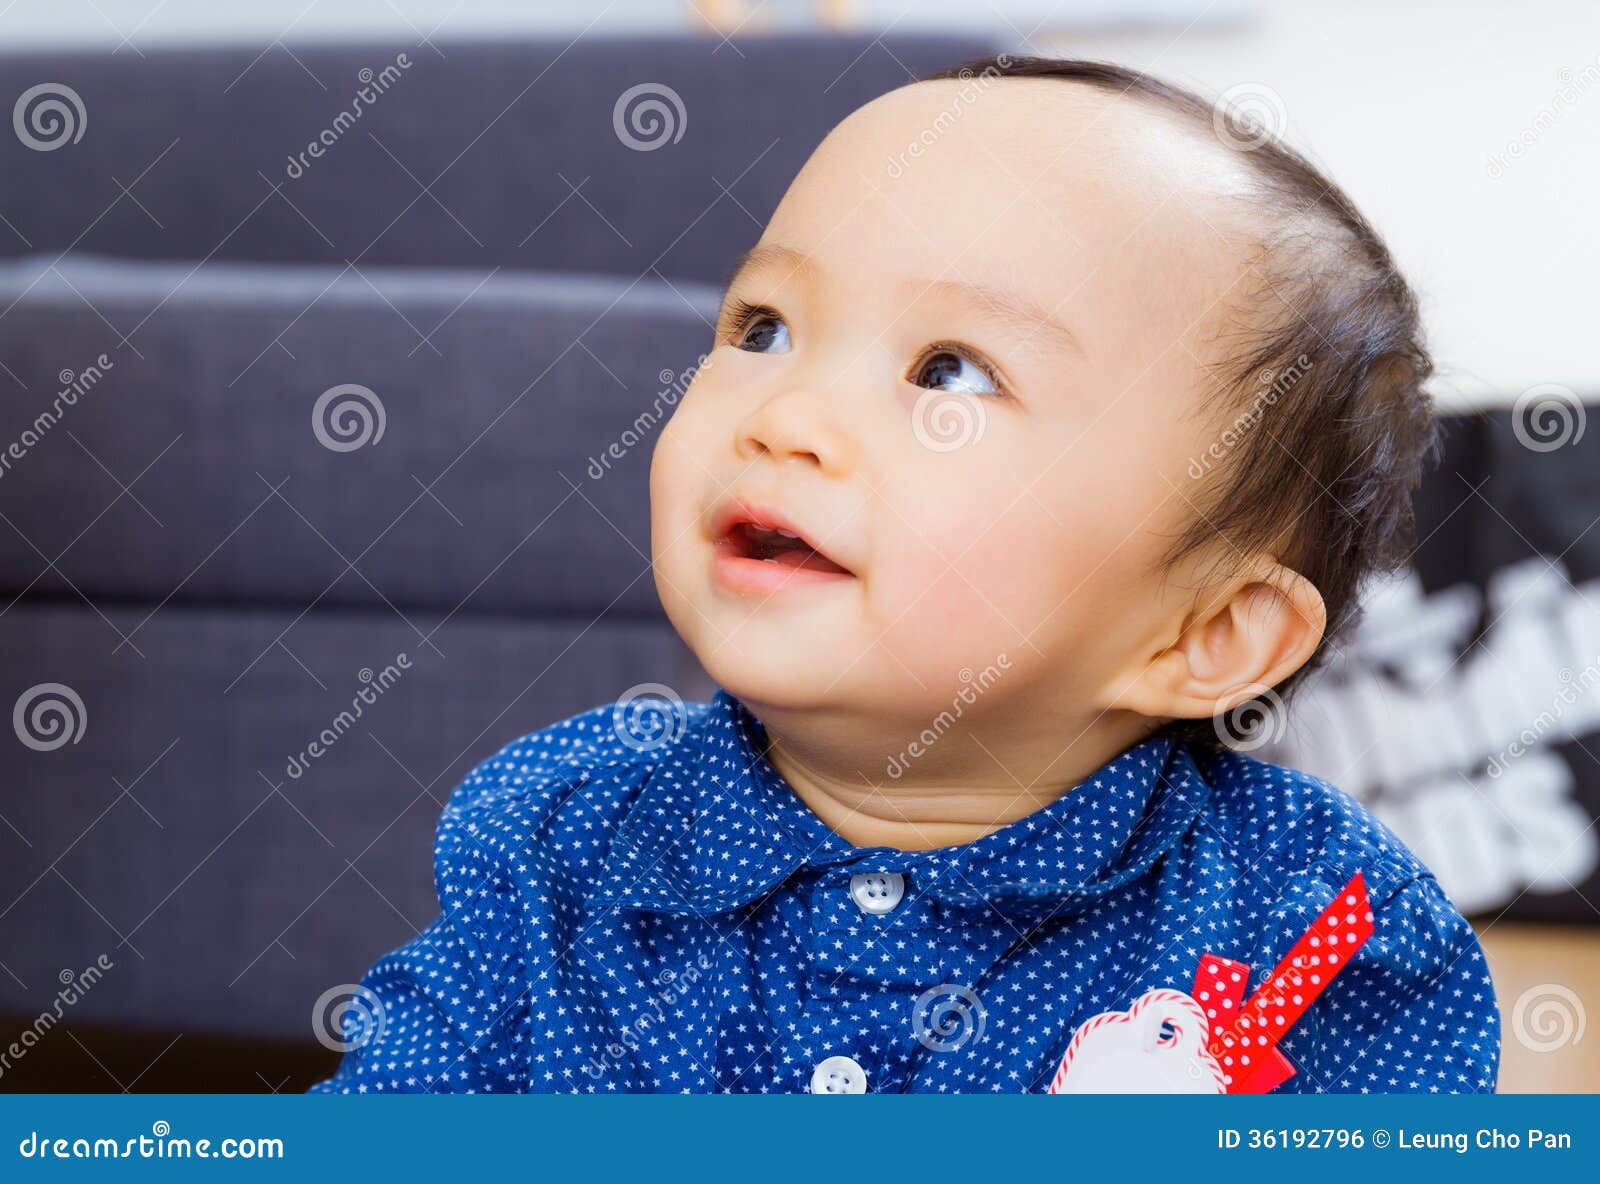 Asian baby boy stock photo. Image of lifestyle, infant - 36192796